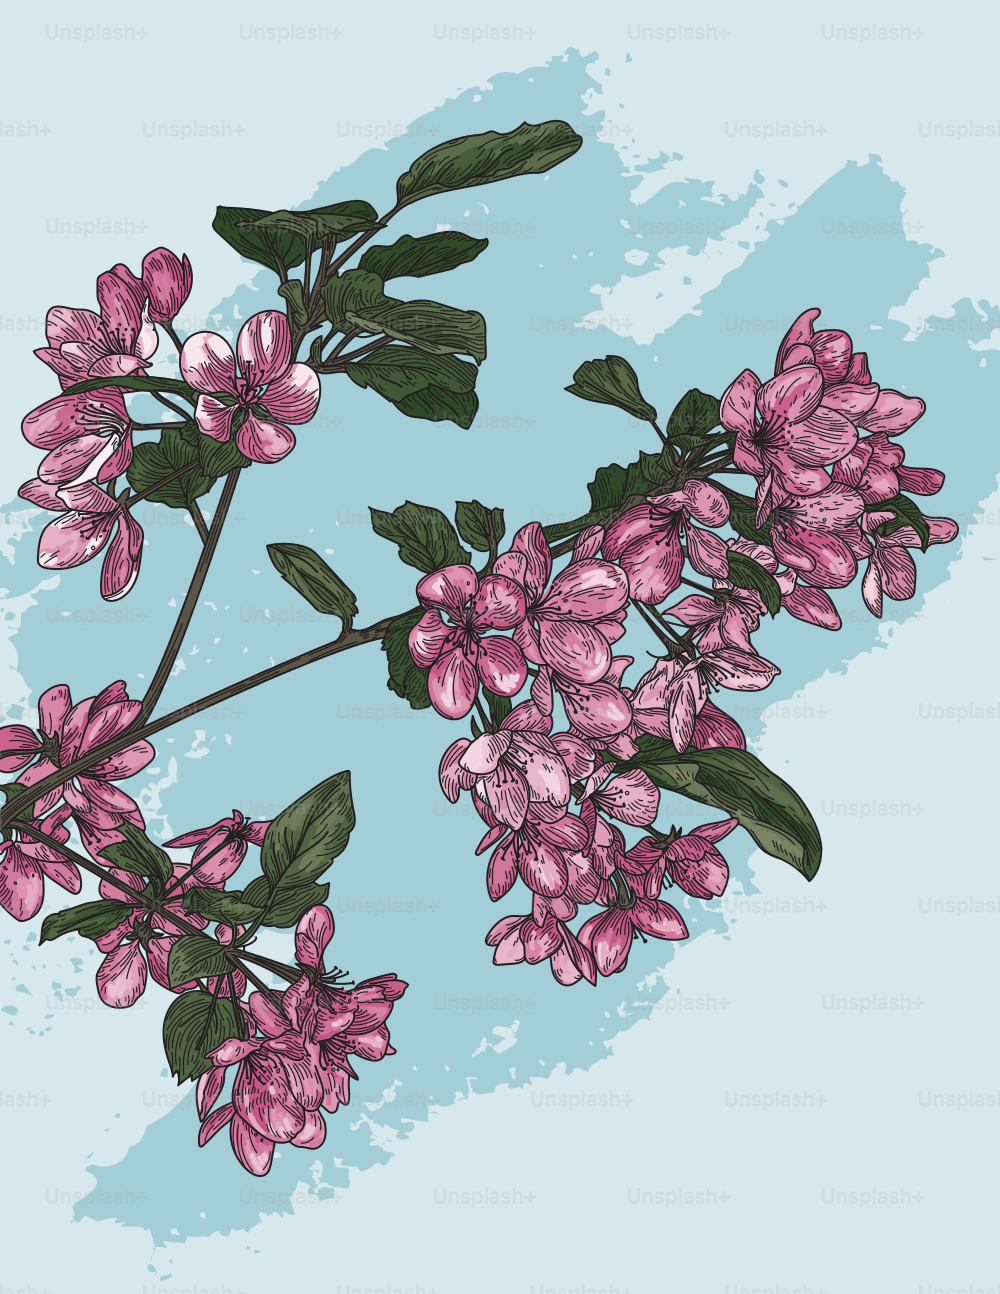 Illustration détaillée au trait de quelques fleurs sur une branche d’un pommetier en fleurs.